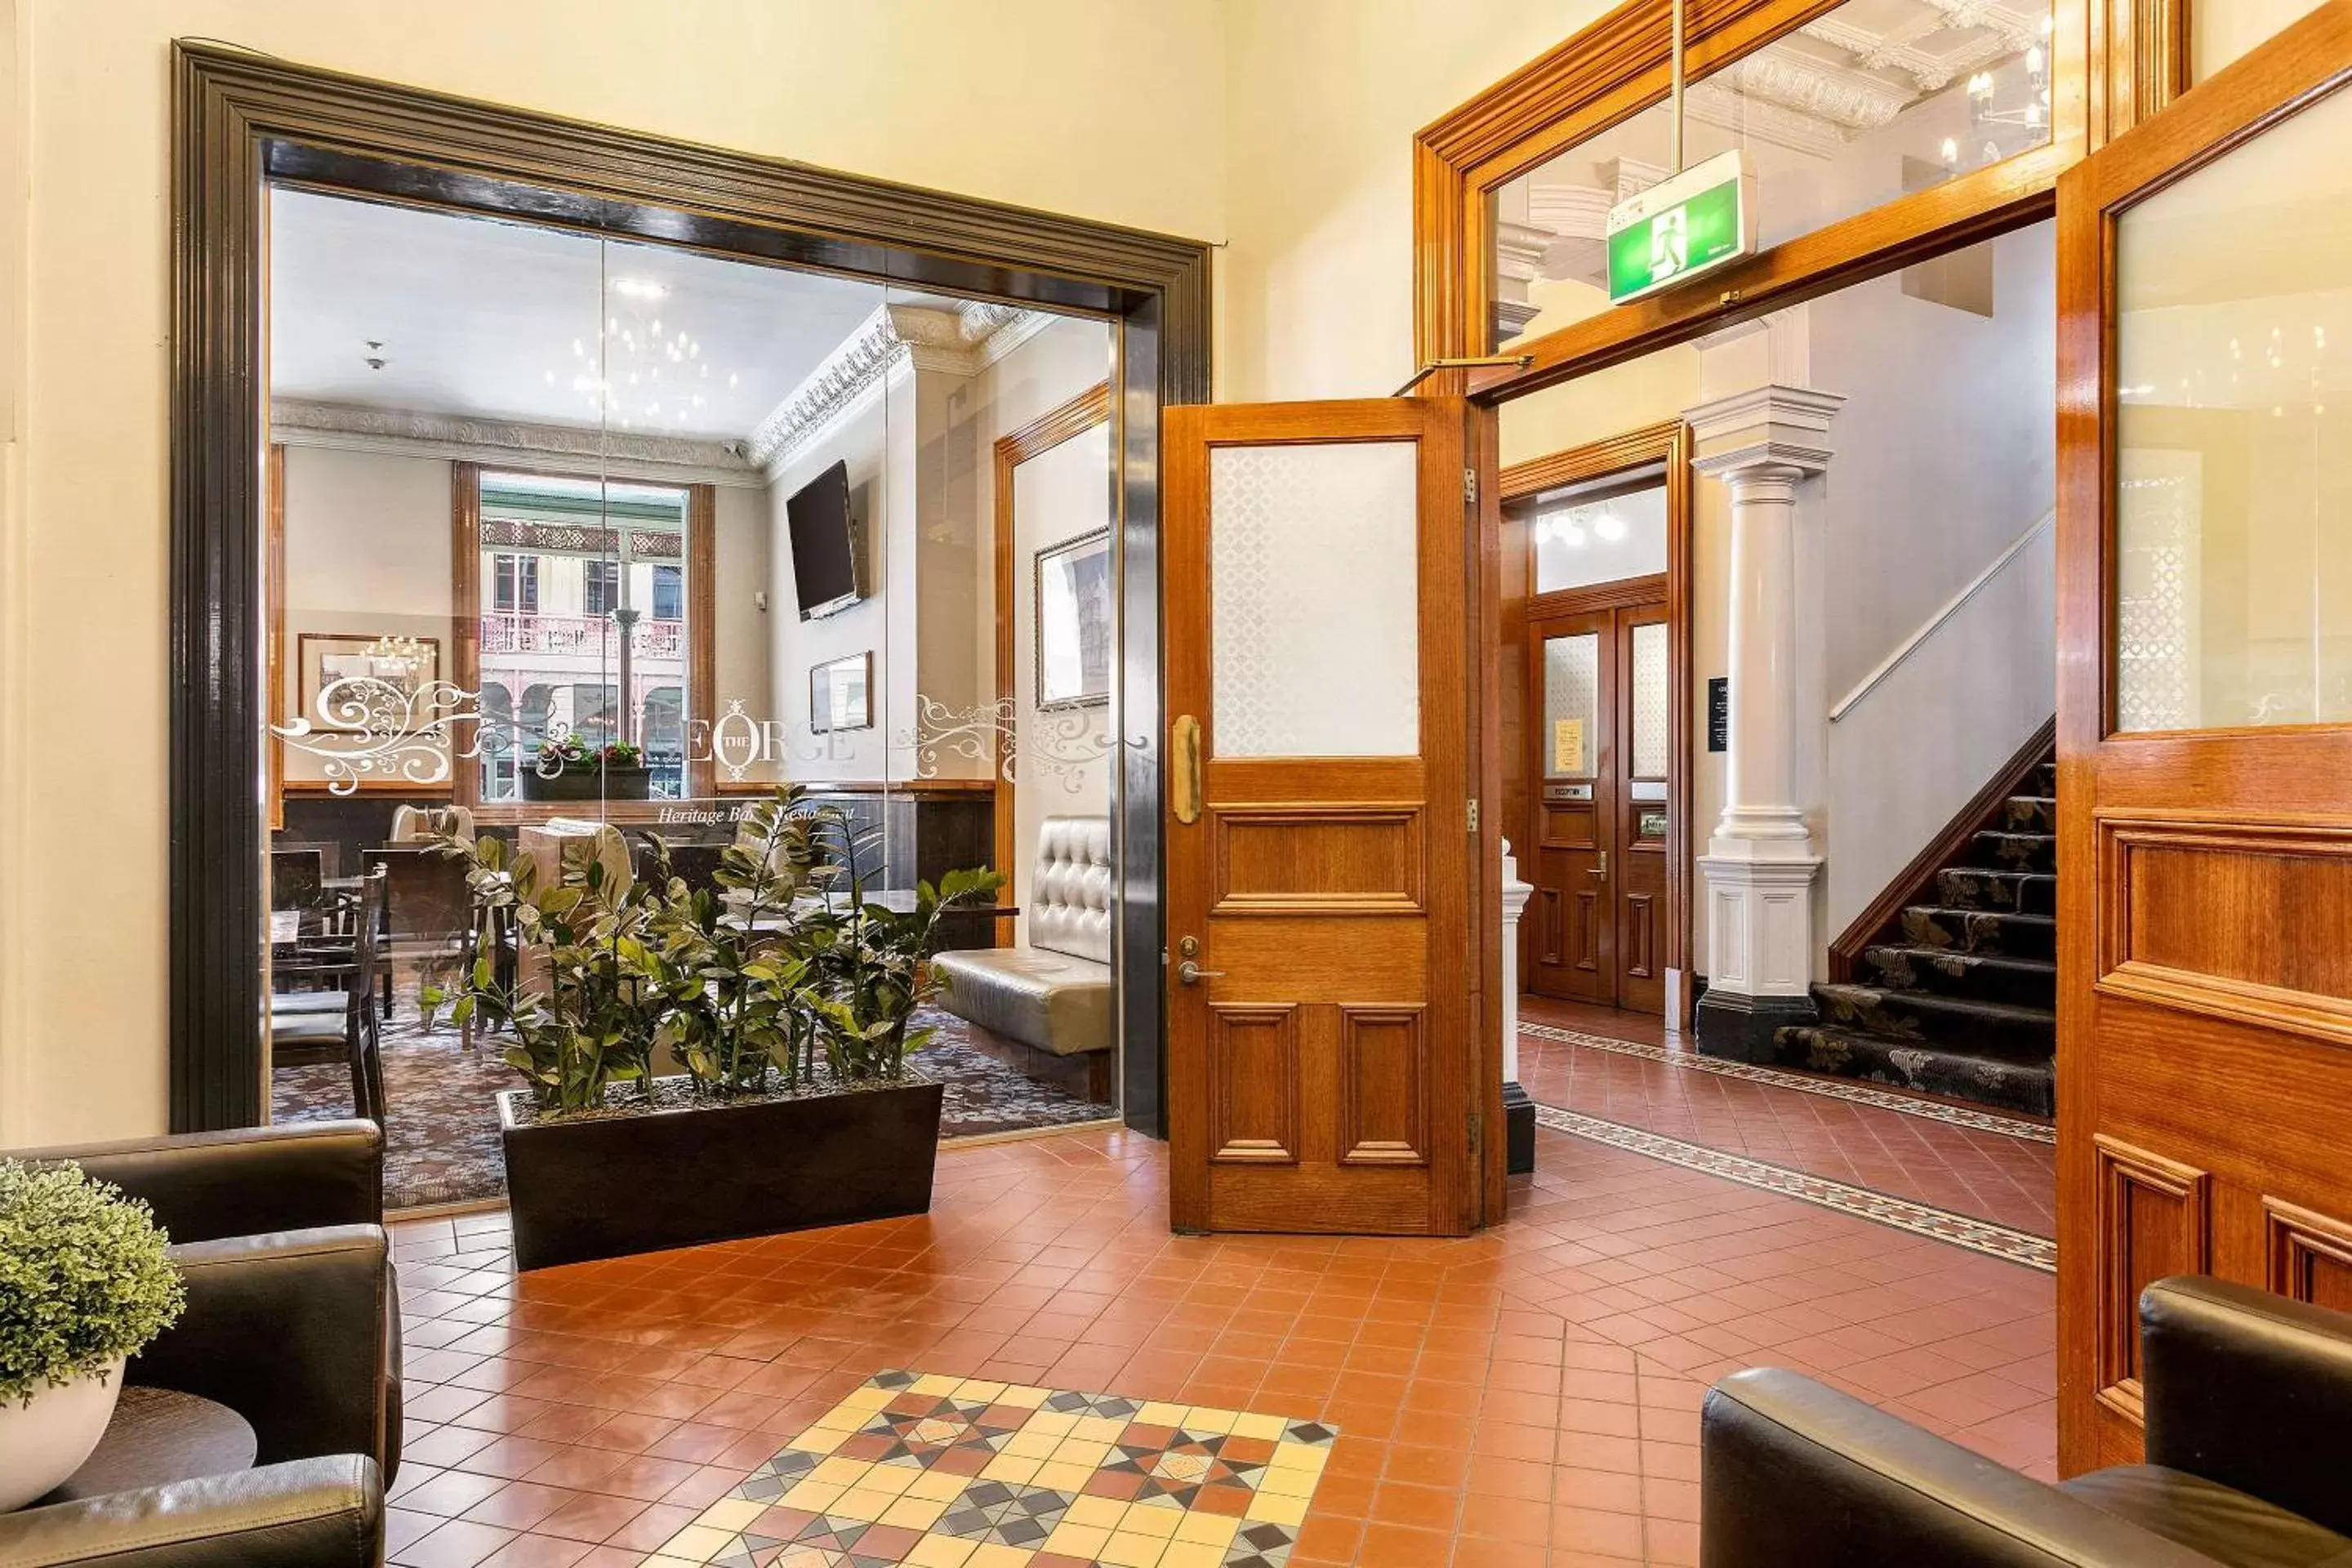 Lobby or reception in Quality Inn The George Hotel Ballarat